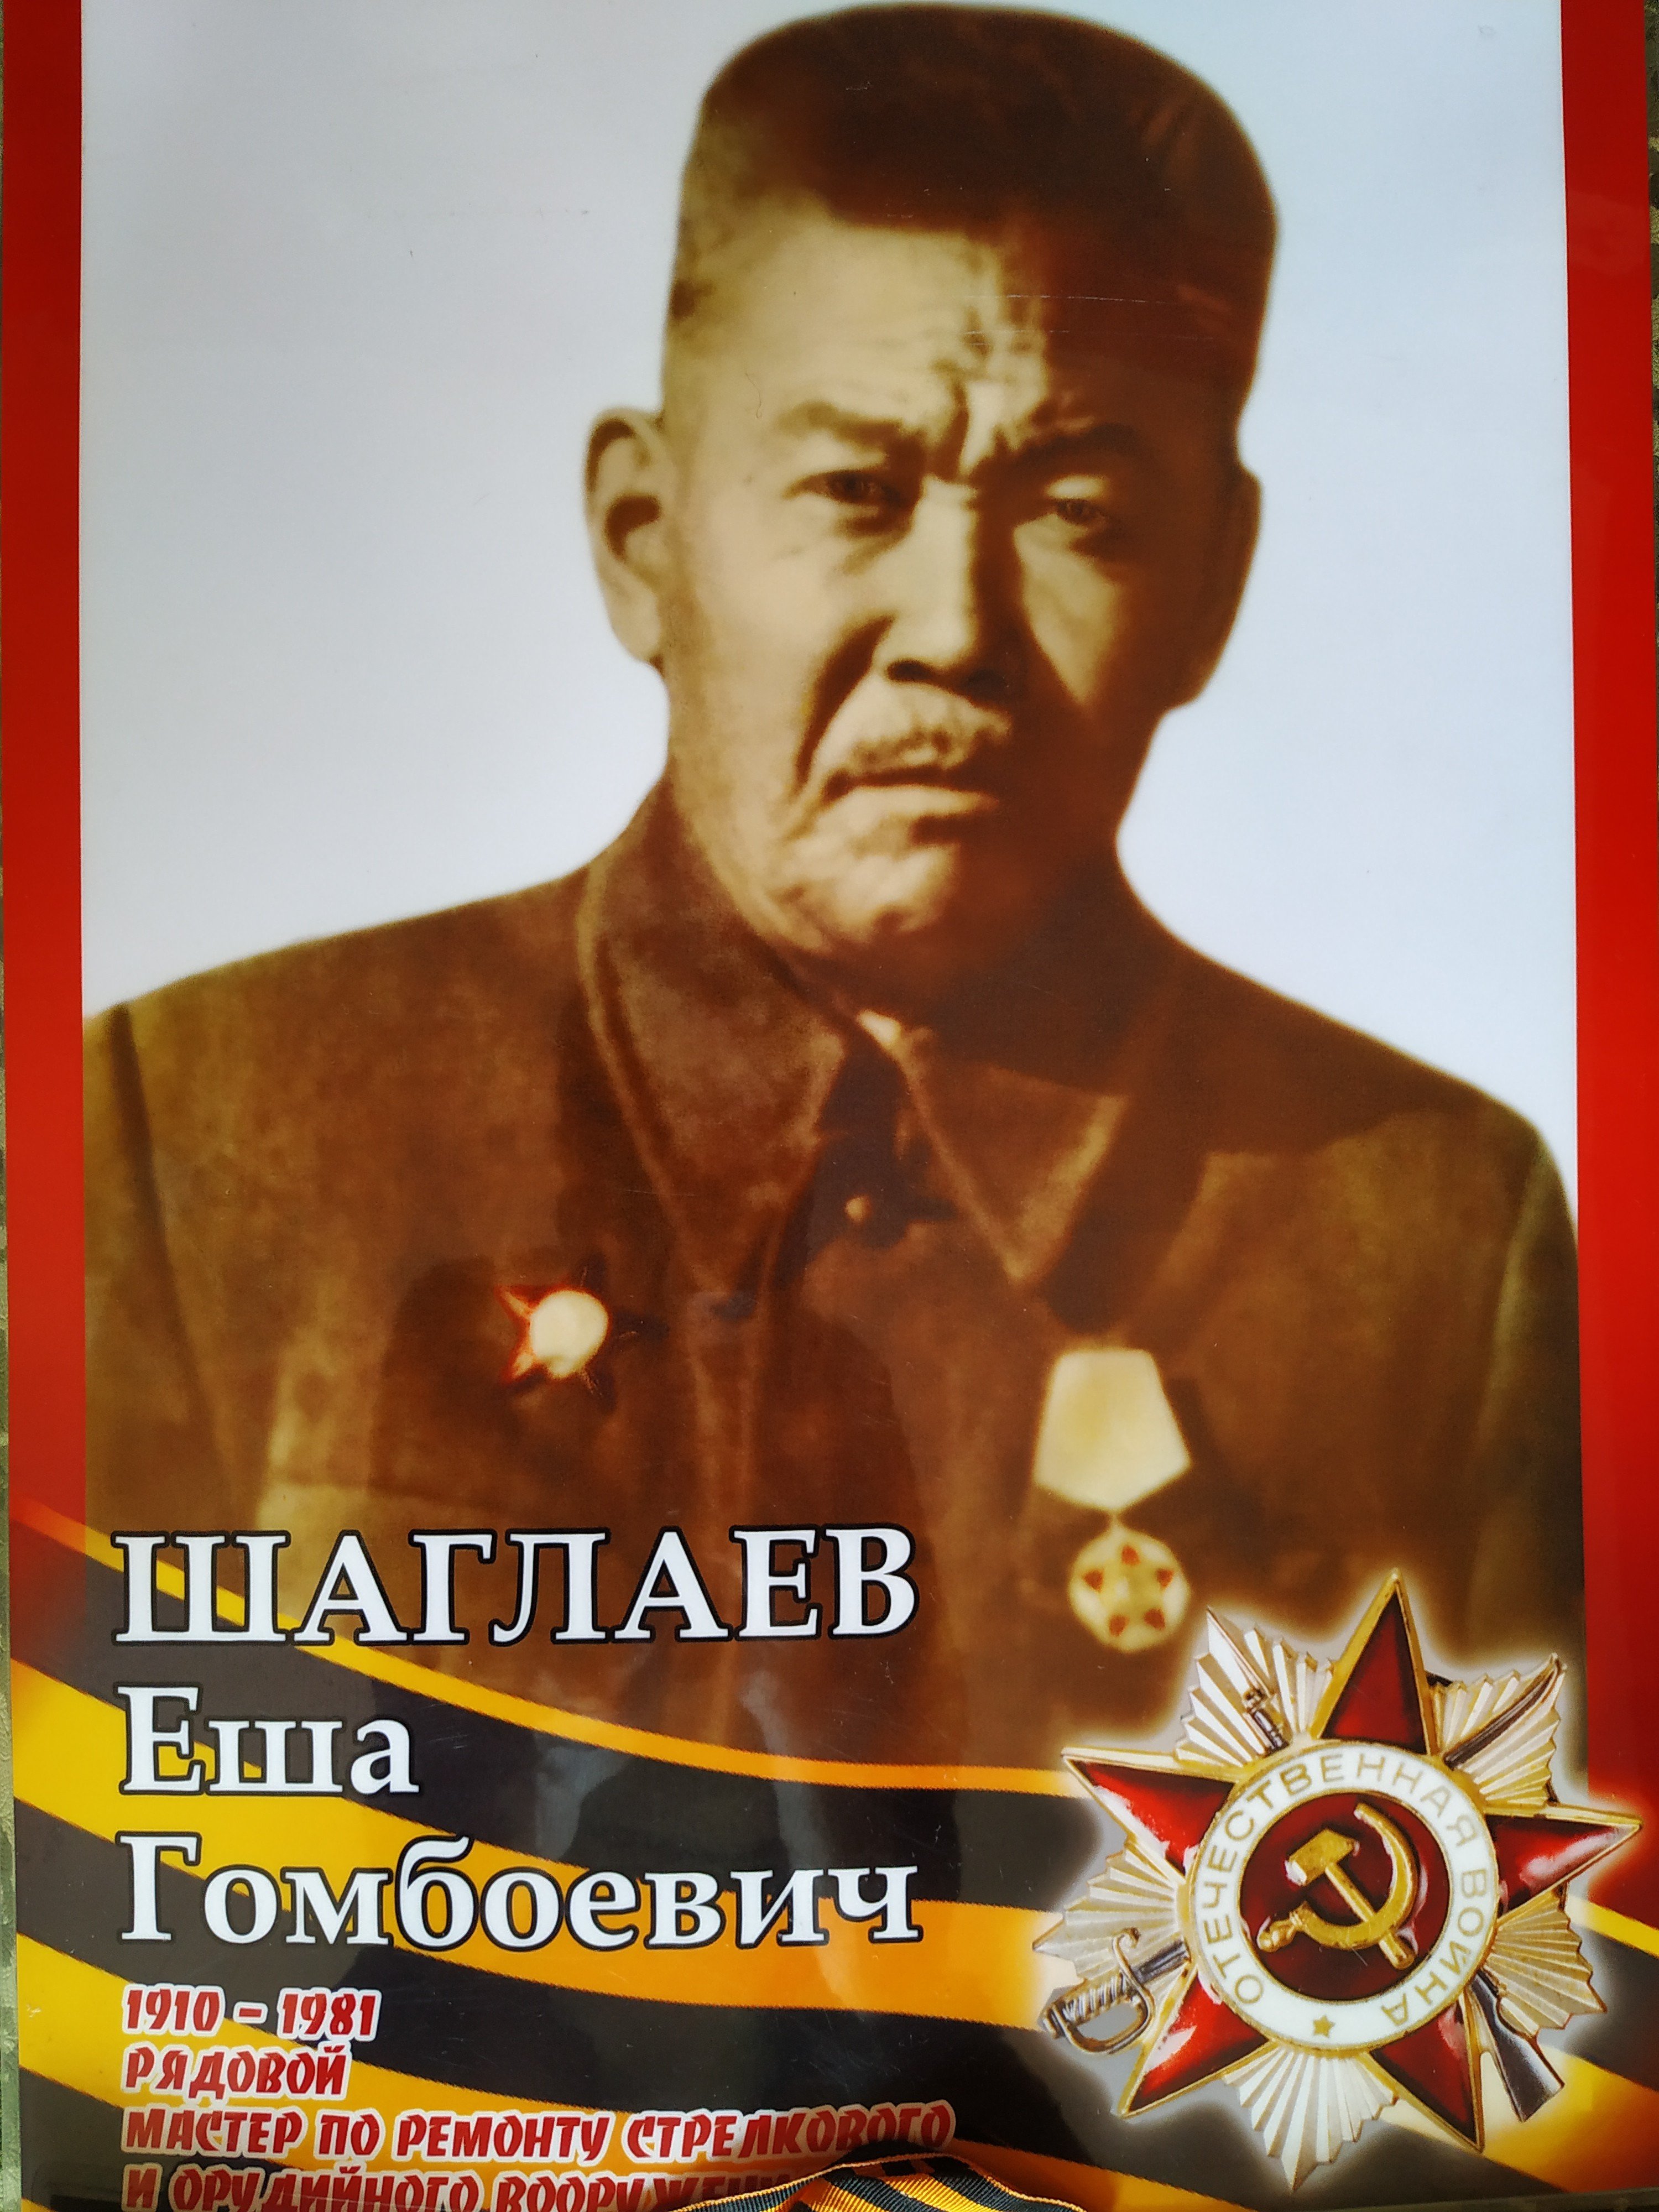 Бессмертный полк: Шаглаев Еша Гомбоевич